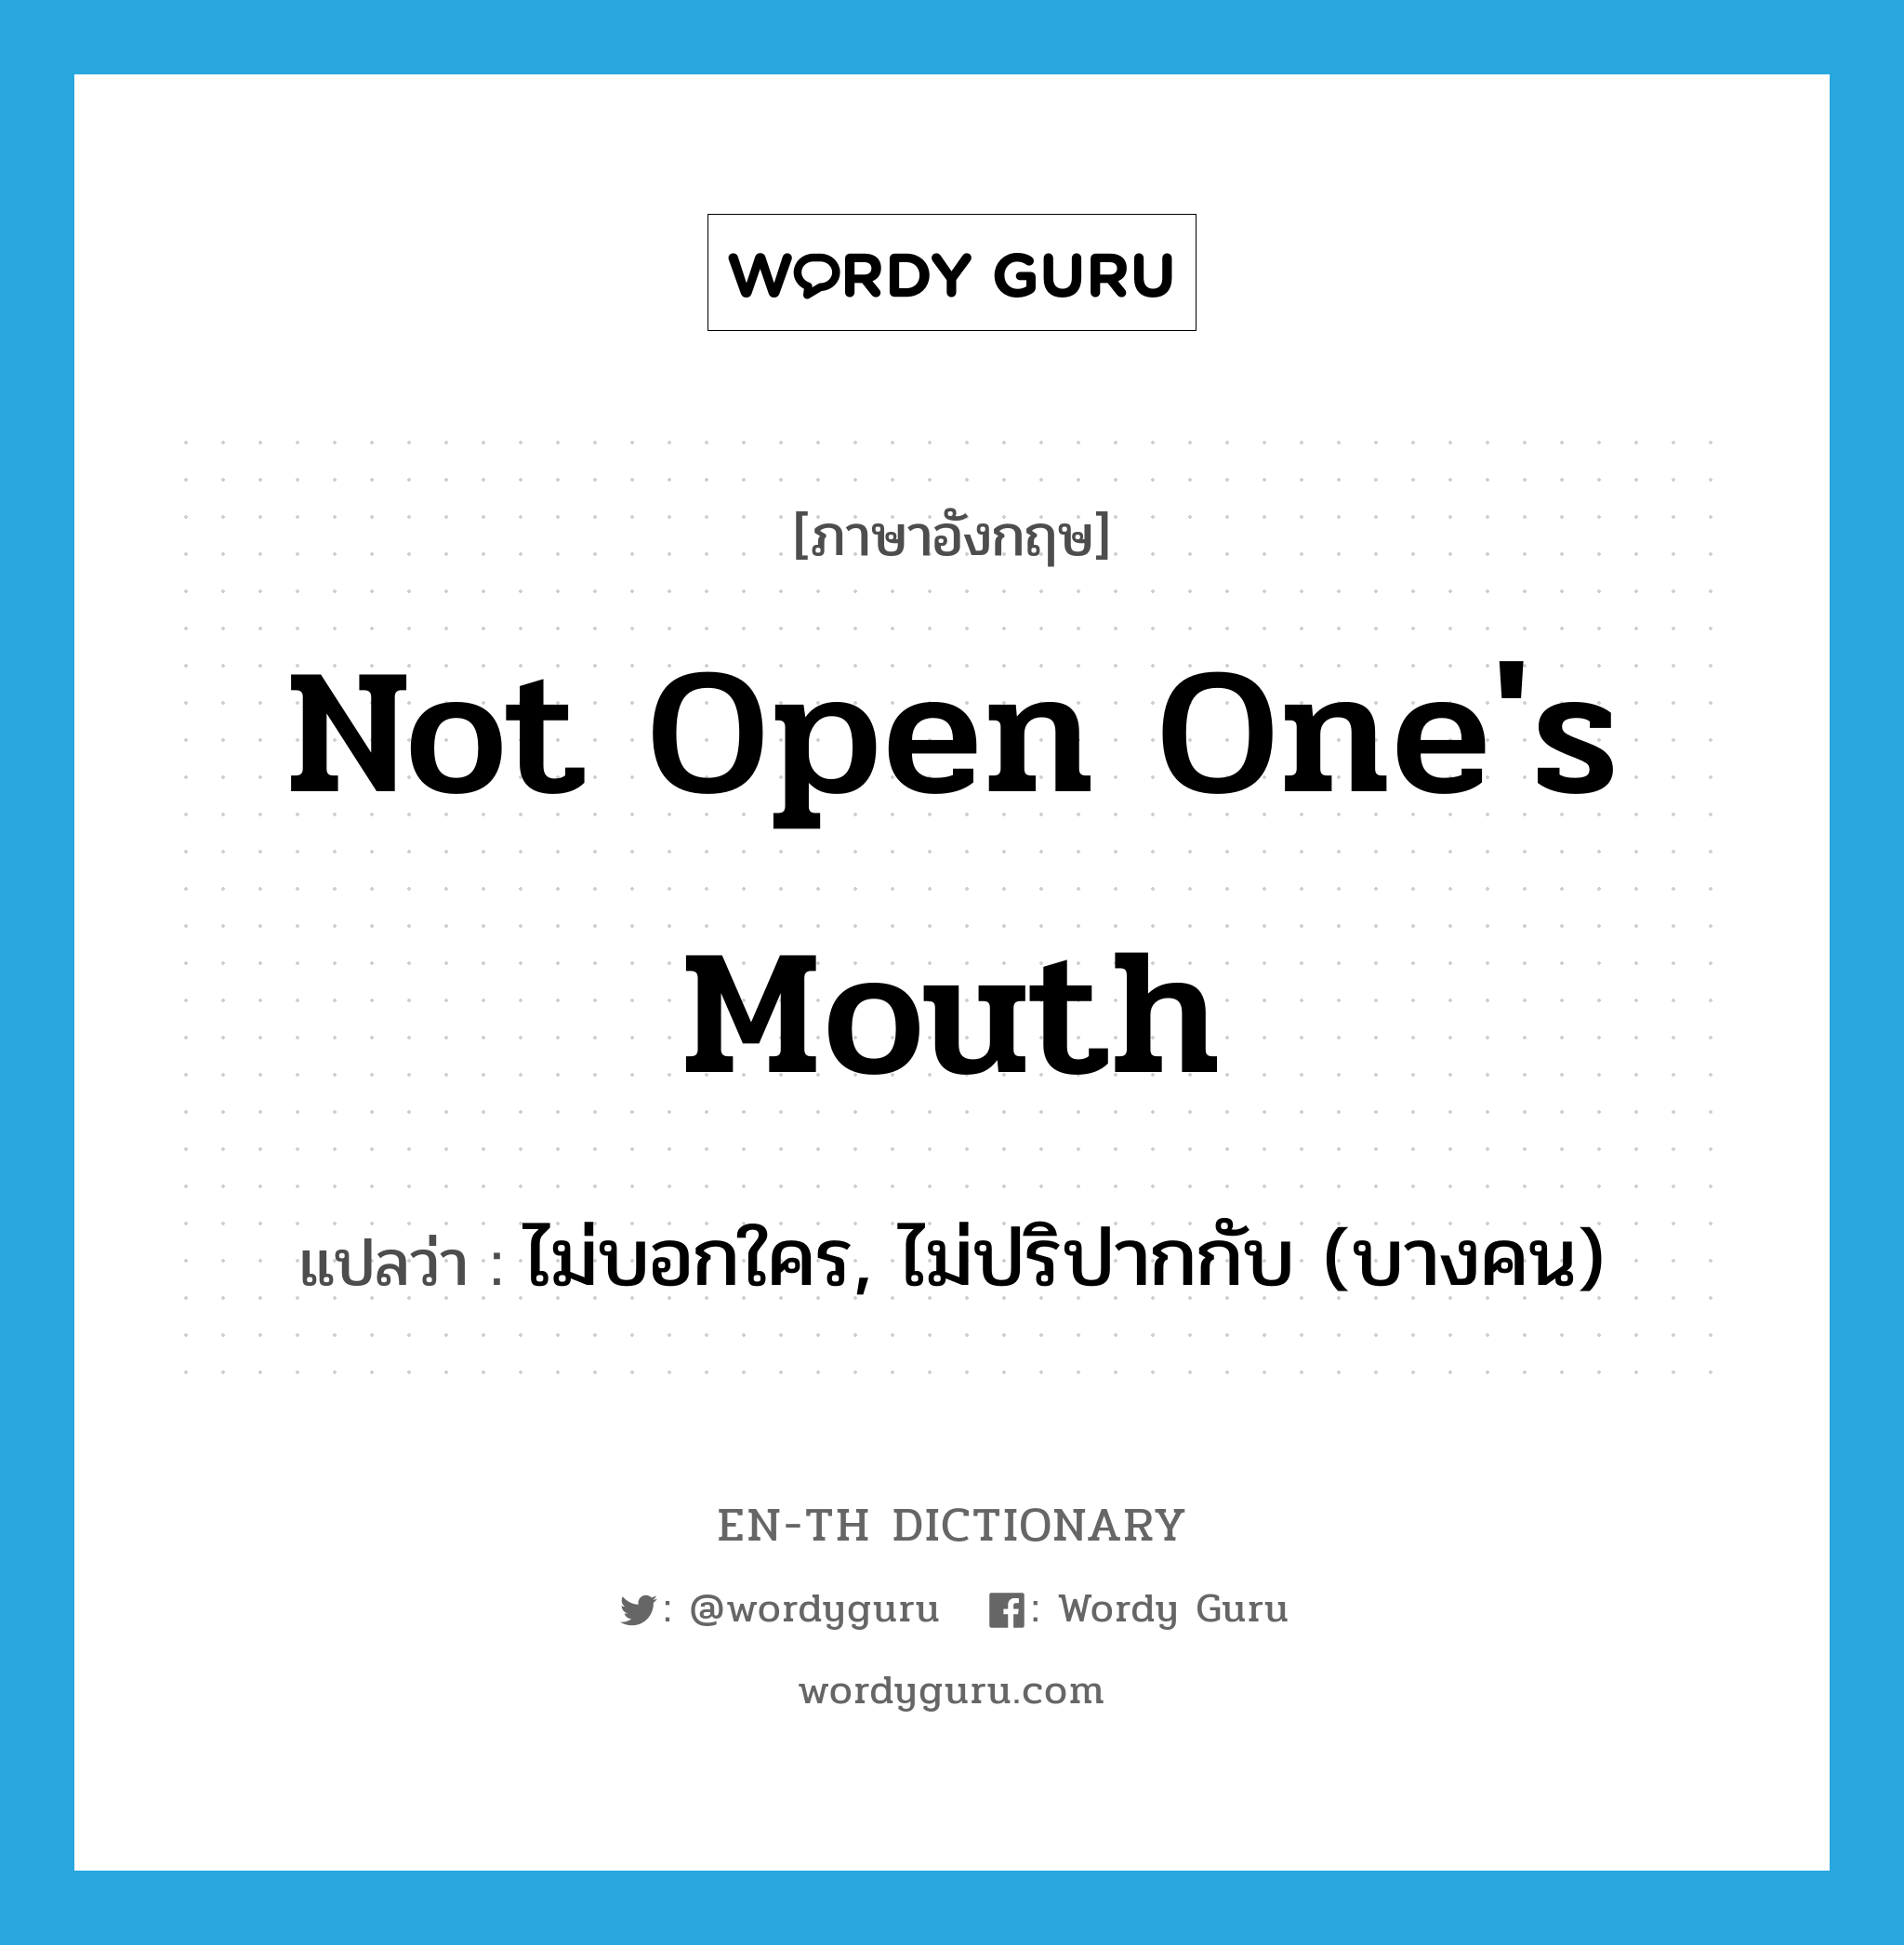 ไม่บอกใคร, ไม่ปริปากกับ (บางคน) ภาษาอังกฤษ?, คำศัพท์ภาษาอังกฤษ ไม่บอกใคร, ไม่ปริปากกับ (บางคน) แปลว่า not open one's mouth ประเภท IDM หมวด IDM